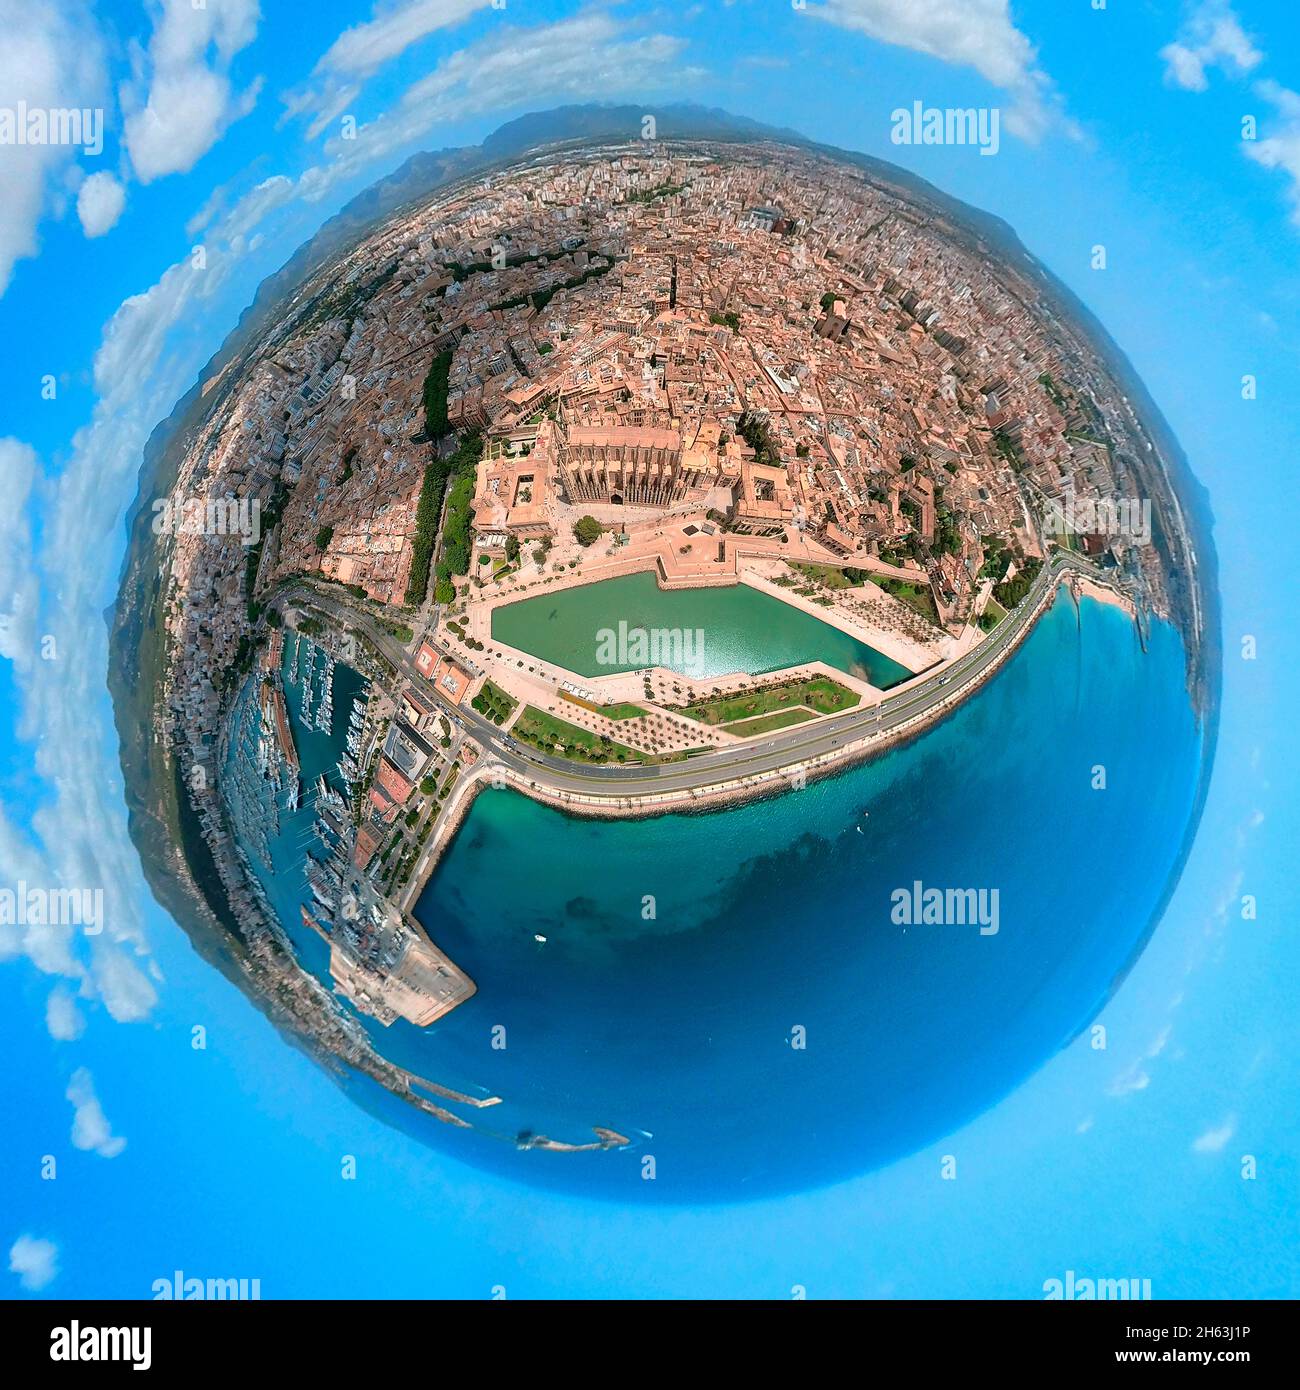 Luftaufnahme, 360-Grad-Ansicht von Palma aus der Fischauge, Kathedrale der heiligen maria in der spanischen Hafenstadt palma, La Seu, palma-mitte, palma, mallorca, balearen, spanien Stockfoto